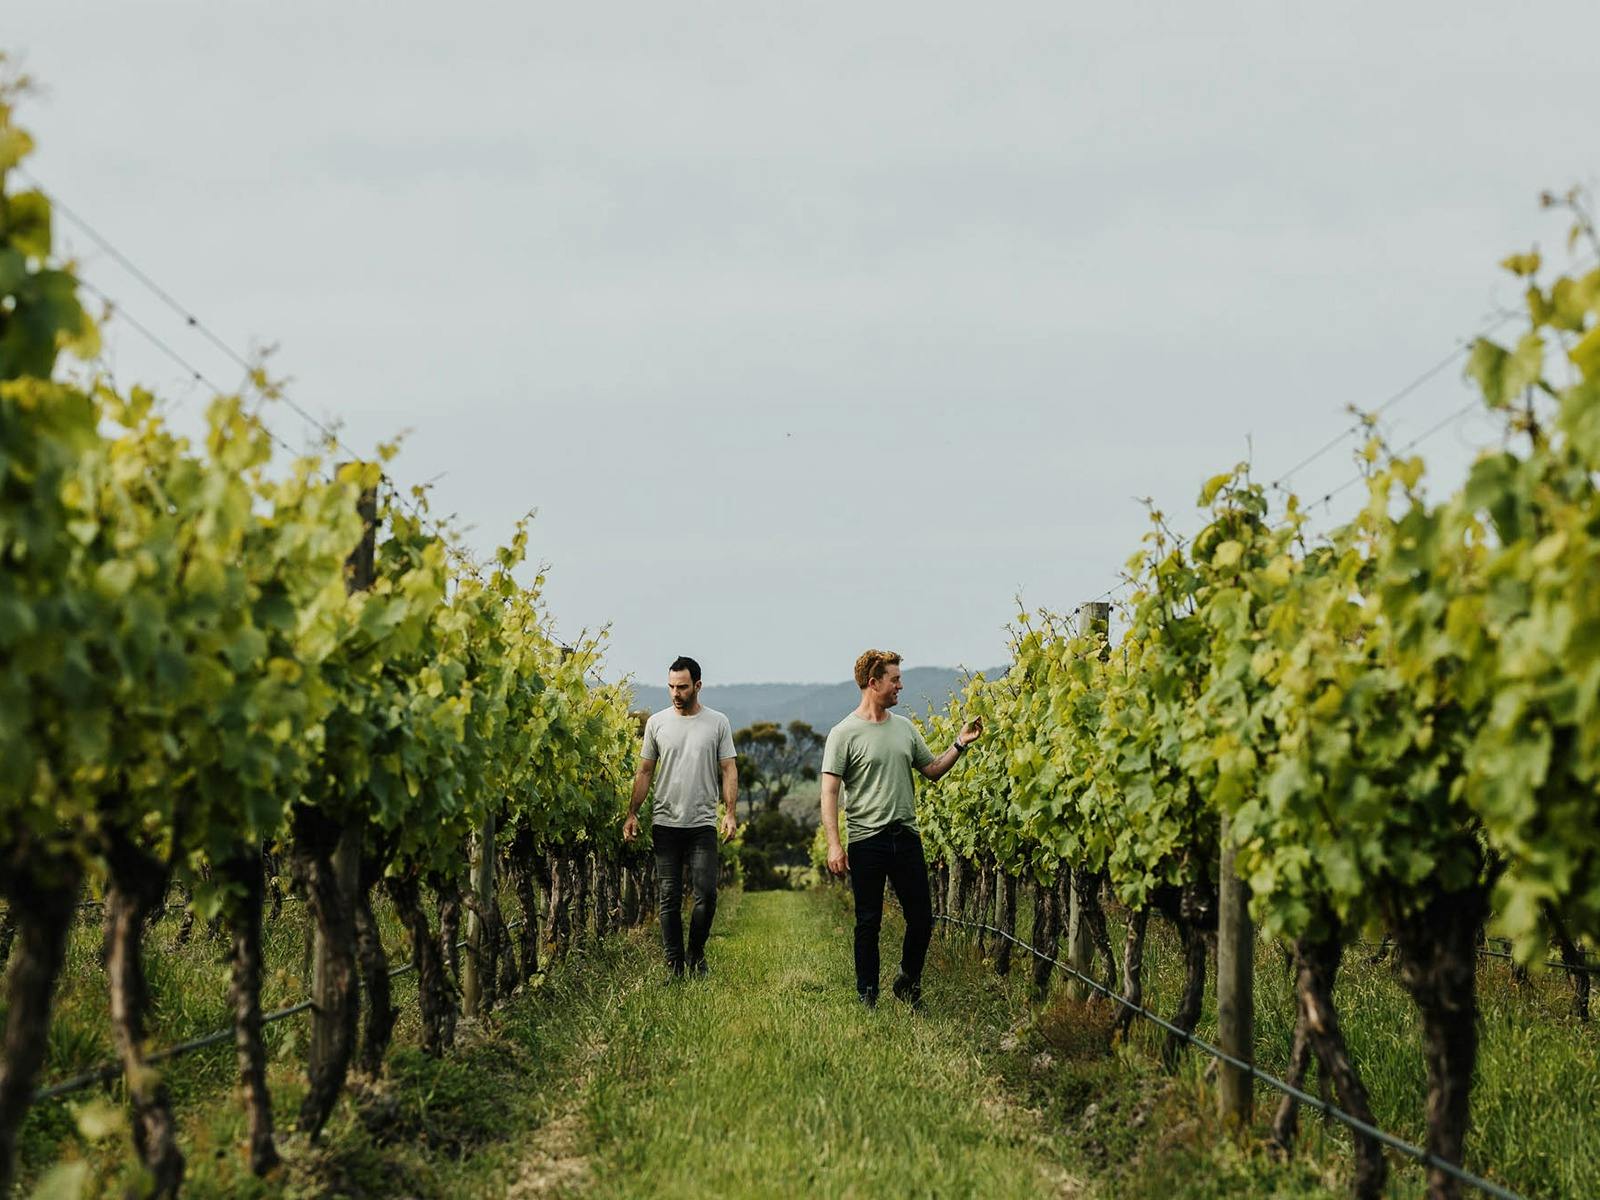 Winemaking starts the vineyard